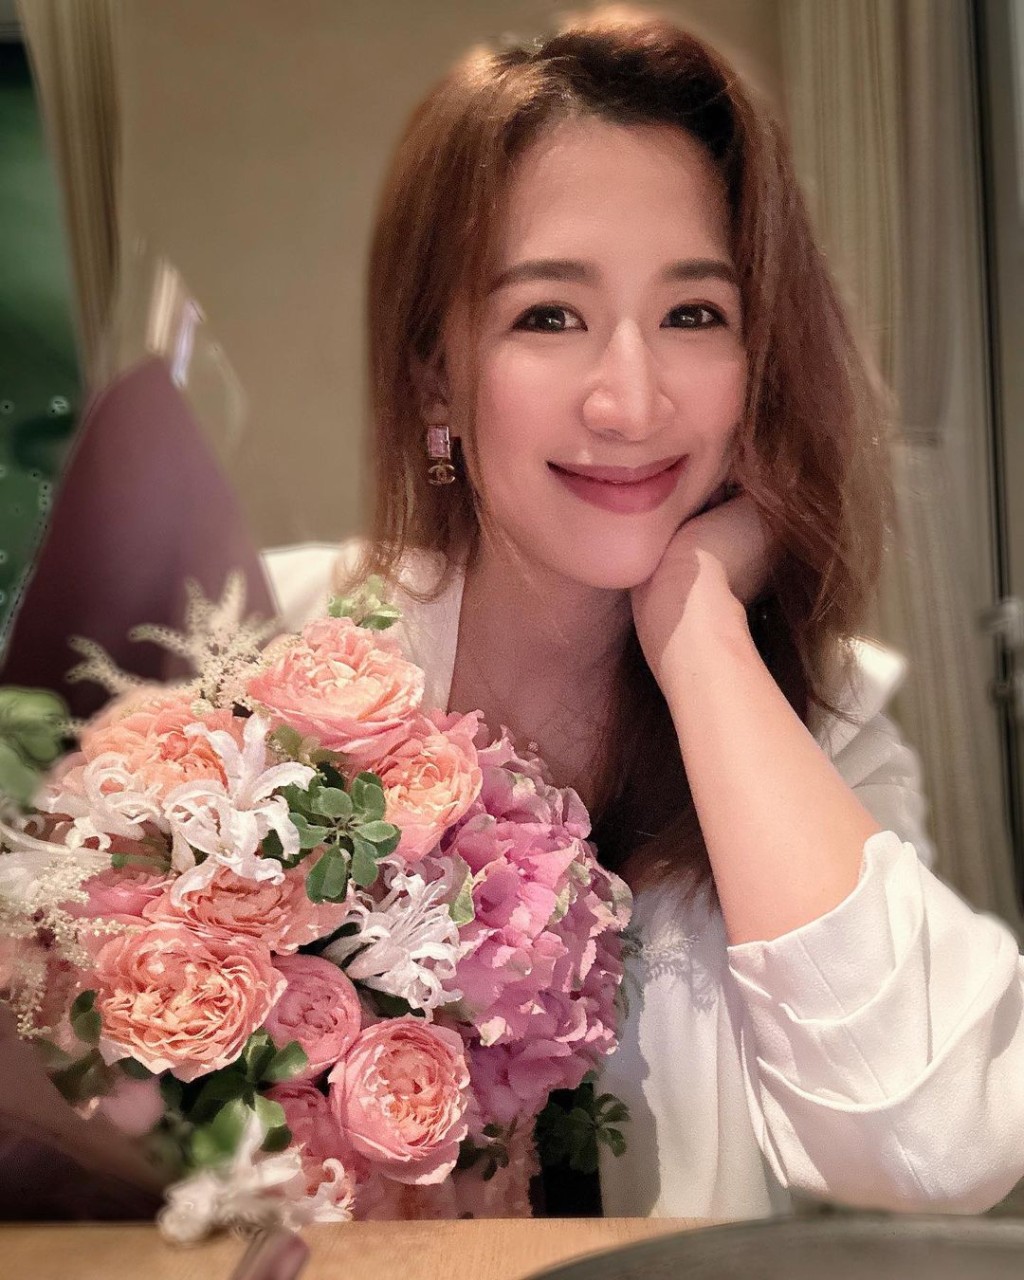 岑杏贤昨晚分享与丈夫庆祝结婚两周年甜蜜照。